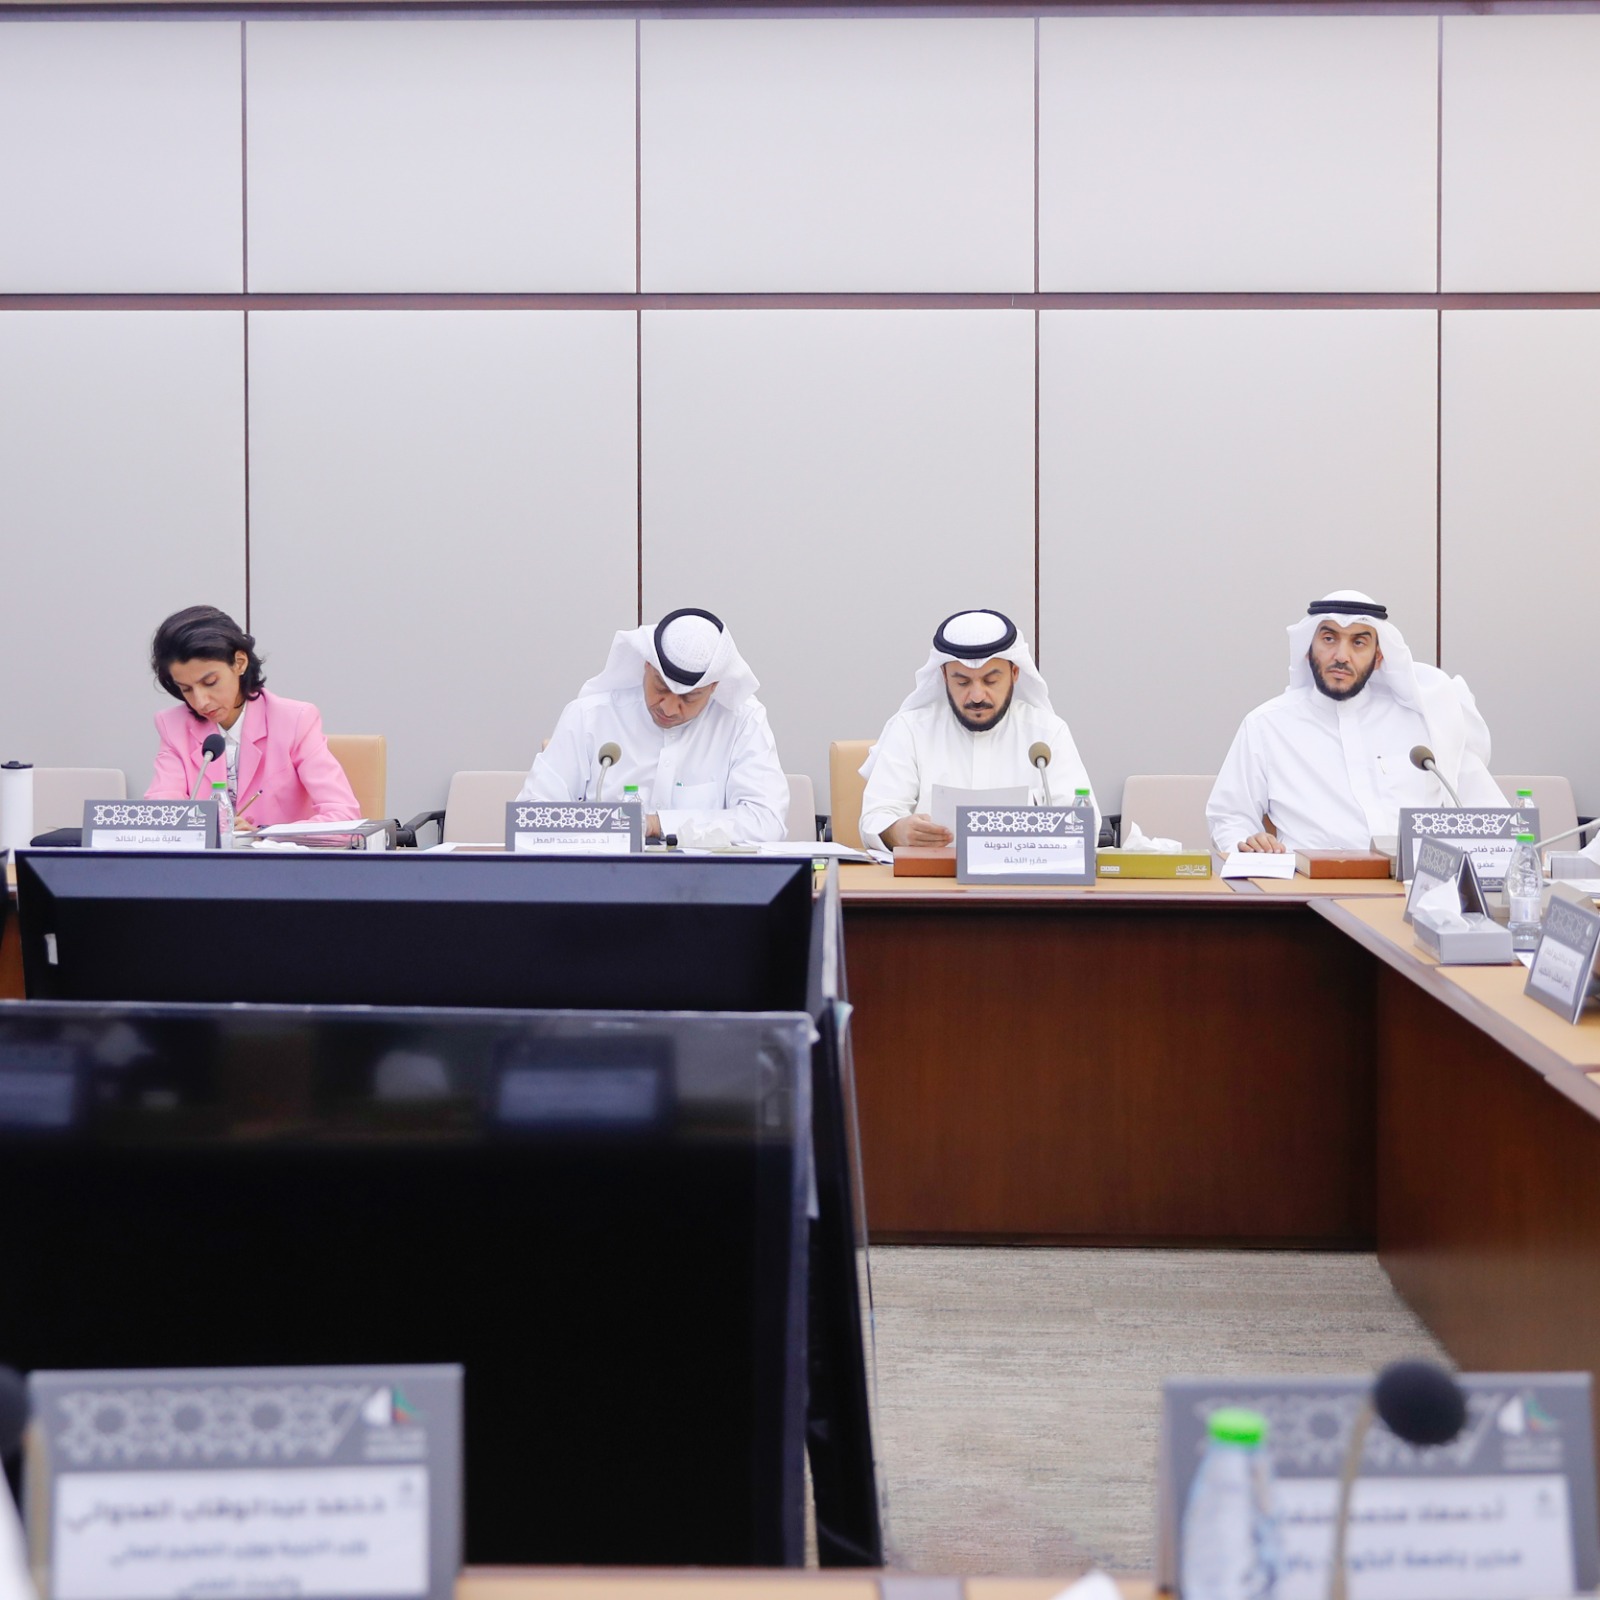 (لجنة شؤون التعليم): بدء البرنامج التحضيري لجامعة عبد الله السالم في شهر سبتمبر المقبل